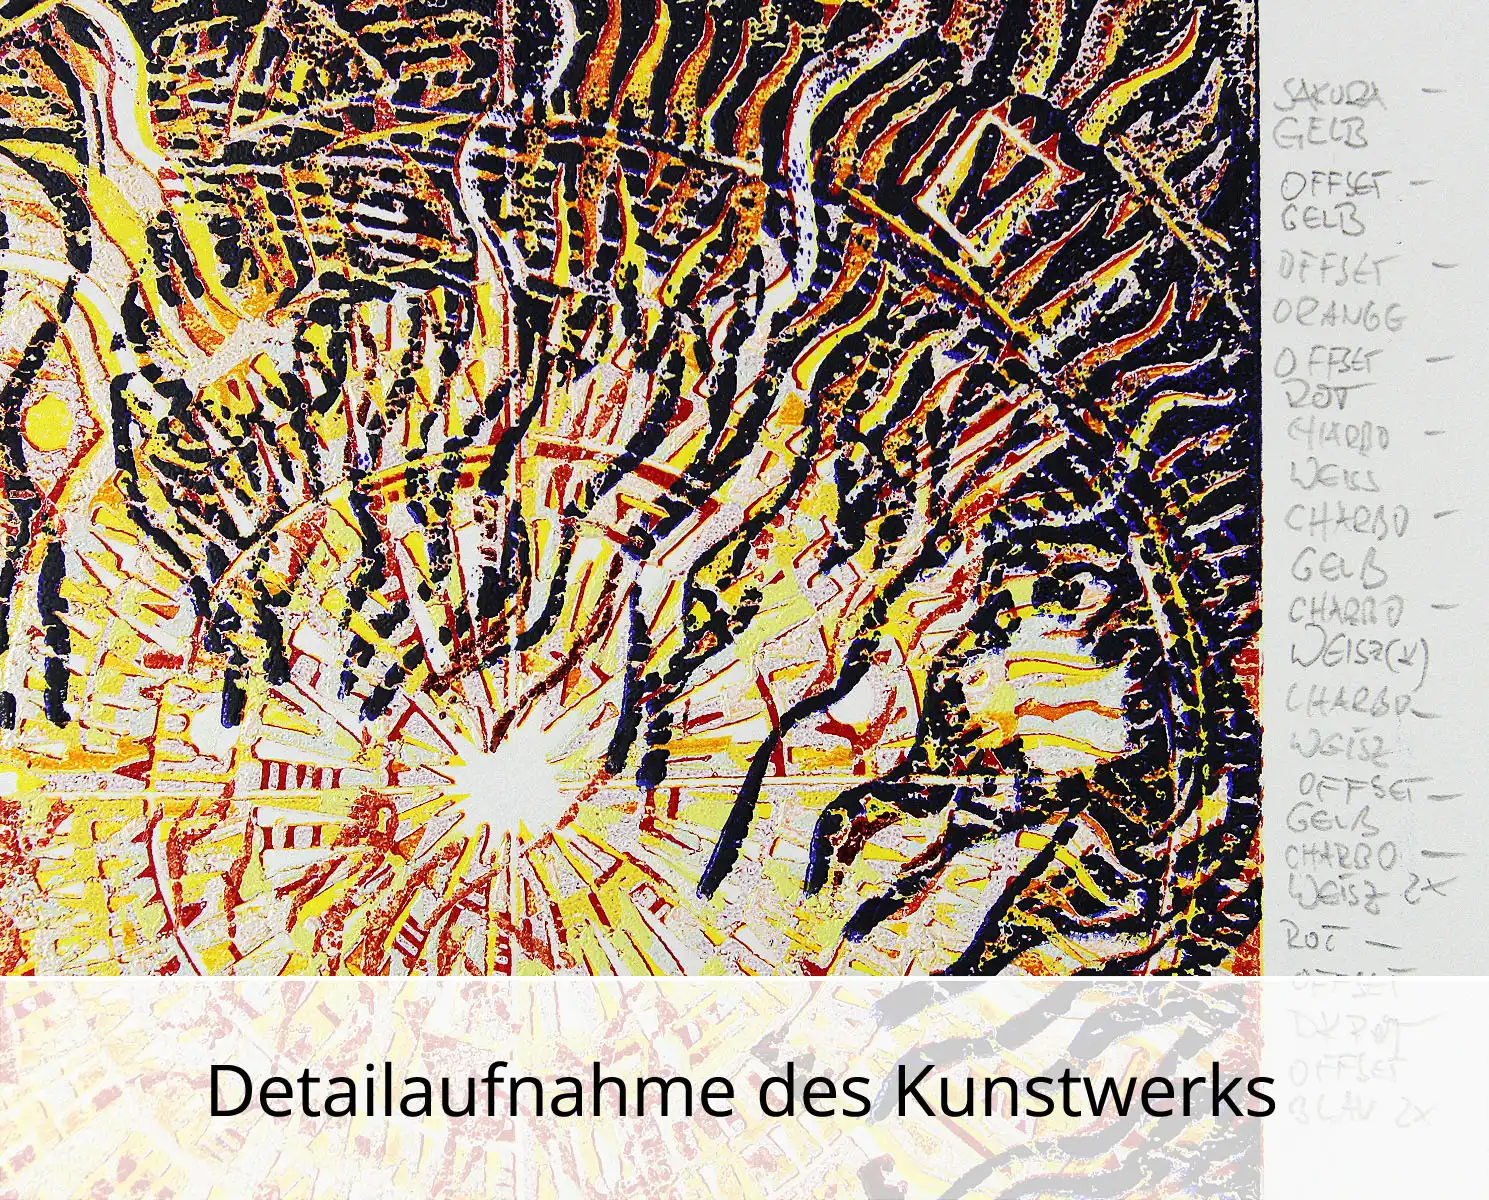 F.O. Haake: "Ohne Titel - Unikat", originale Grafik/serielles Unikat, mehrfarbiger Linoldruck